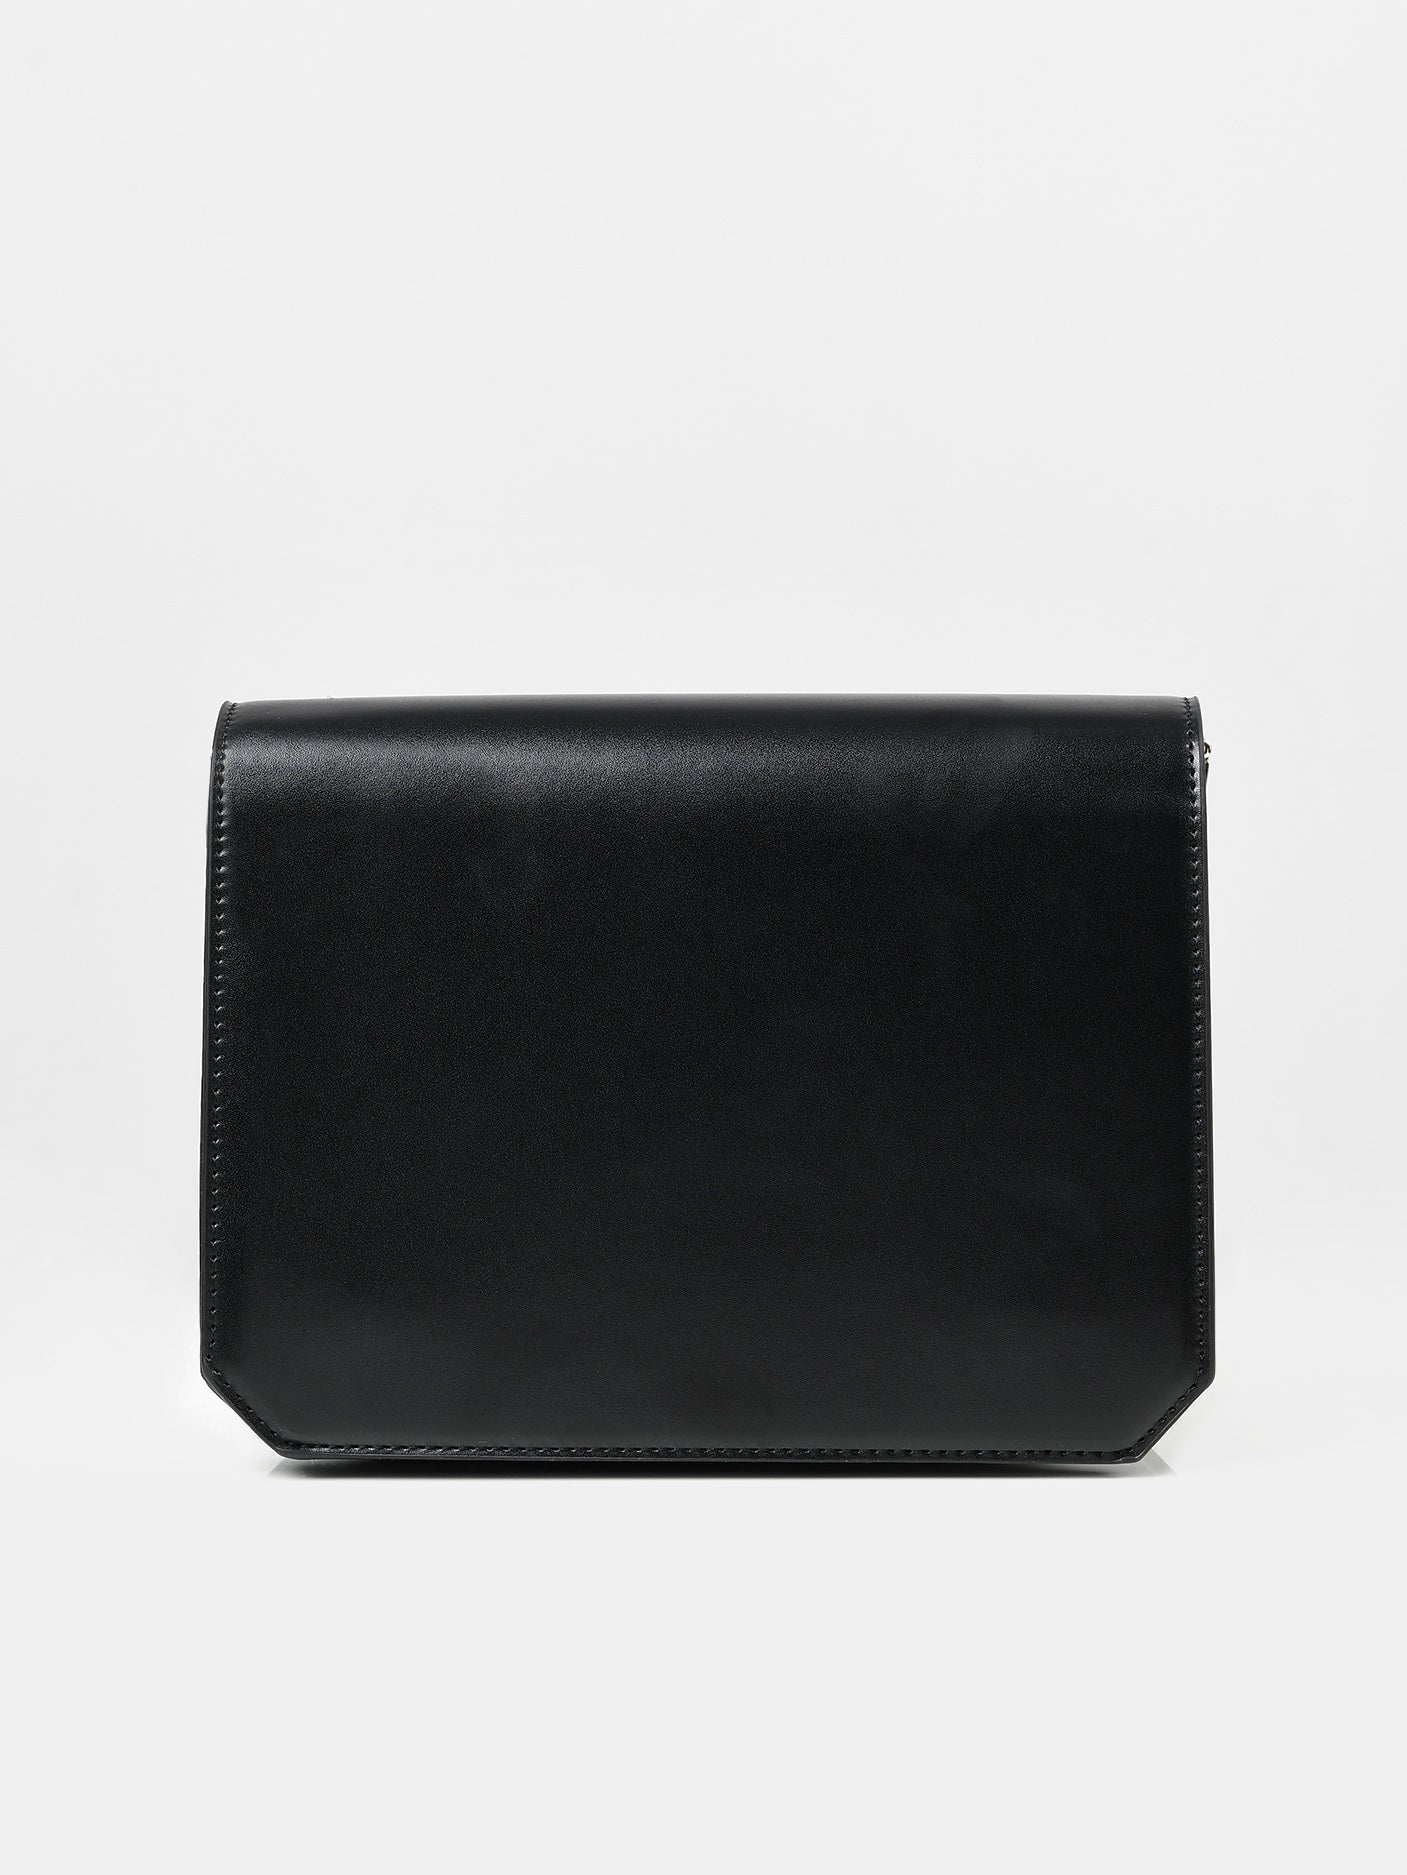 Basic Plain Handbag